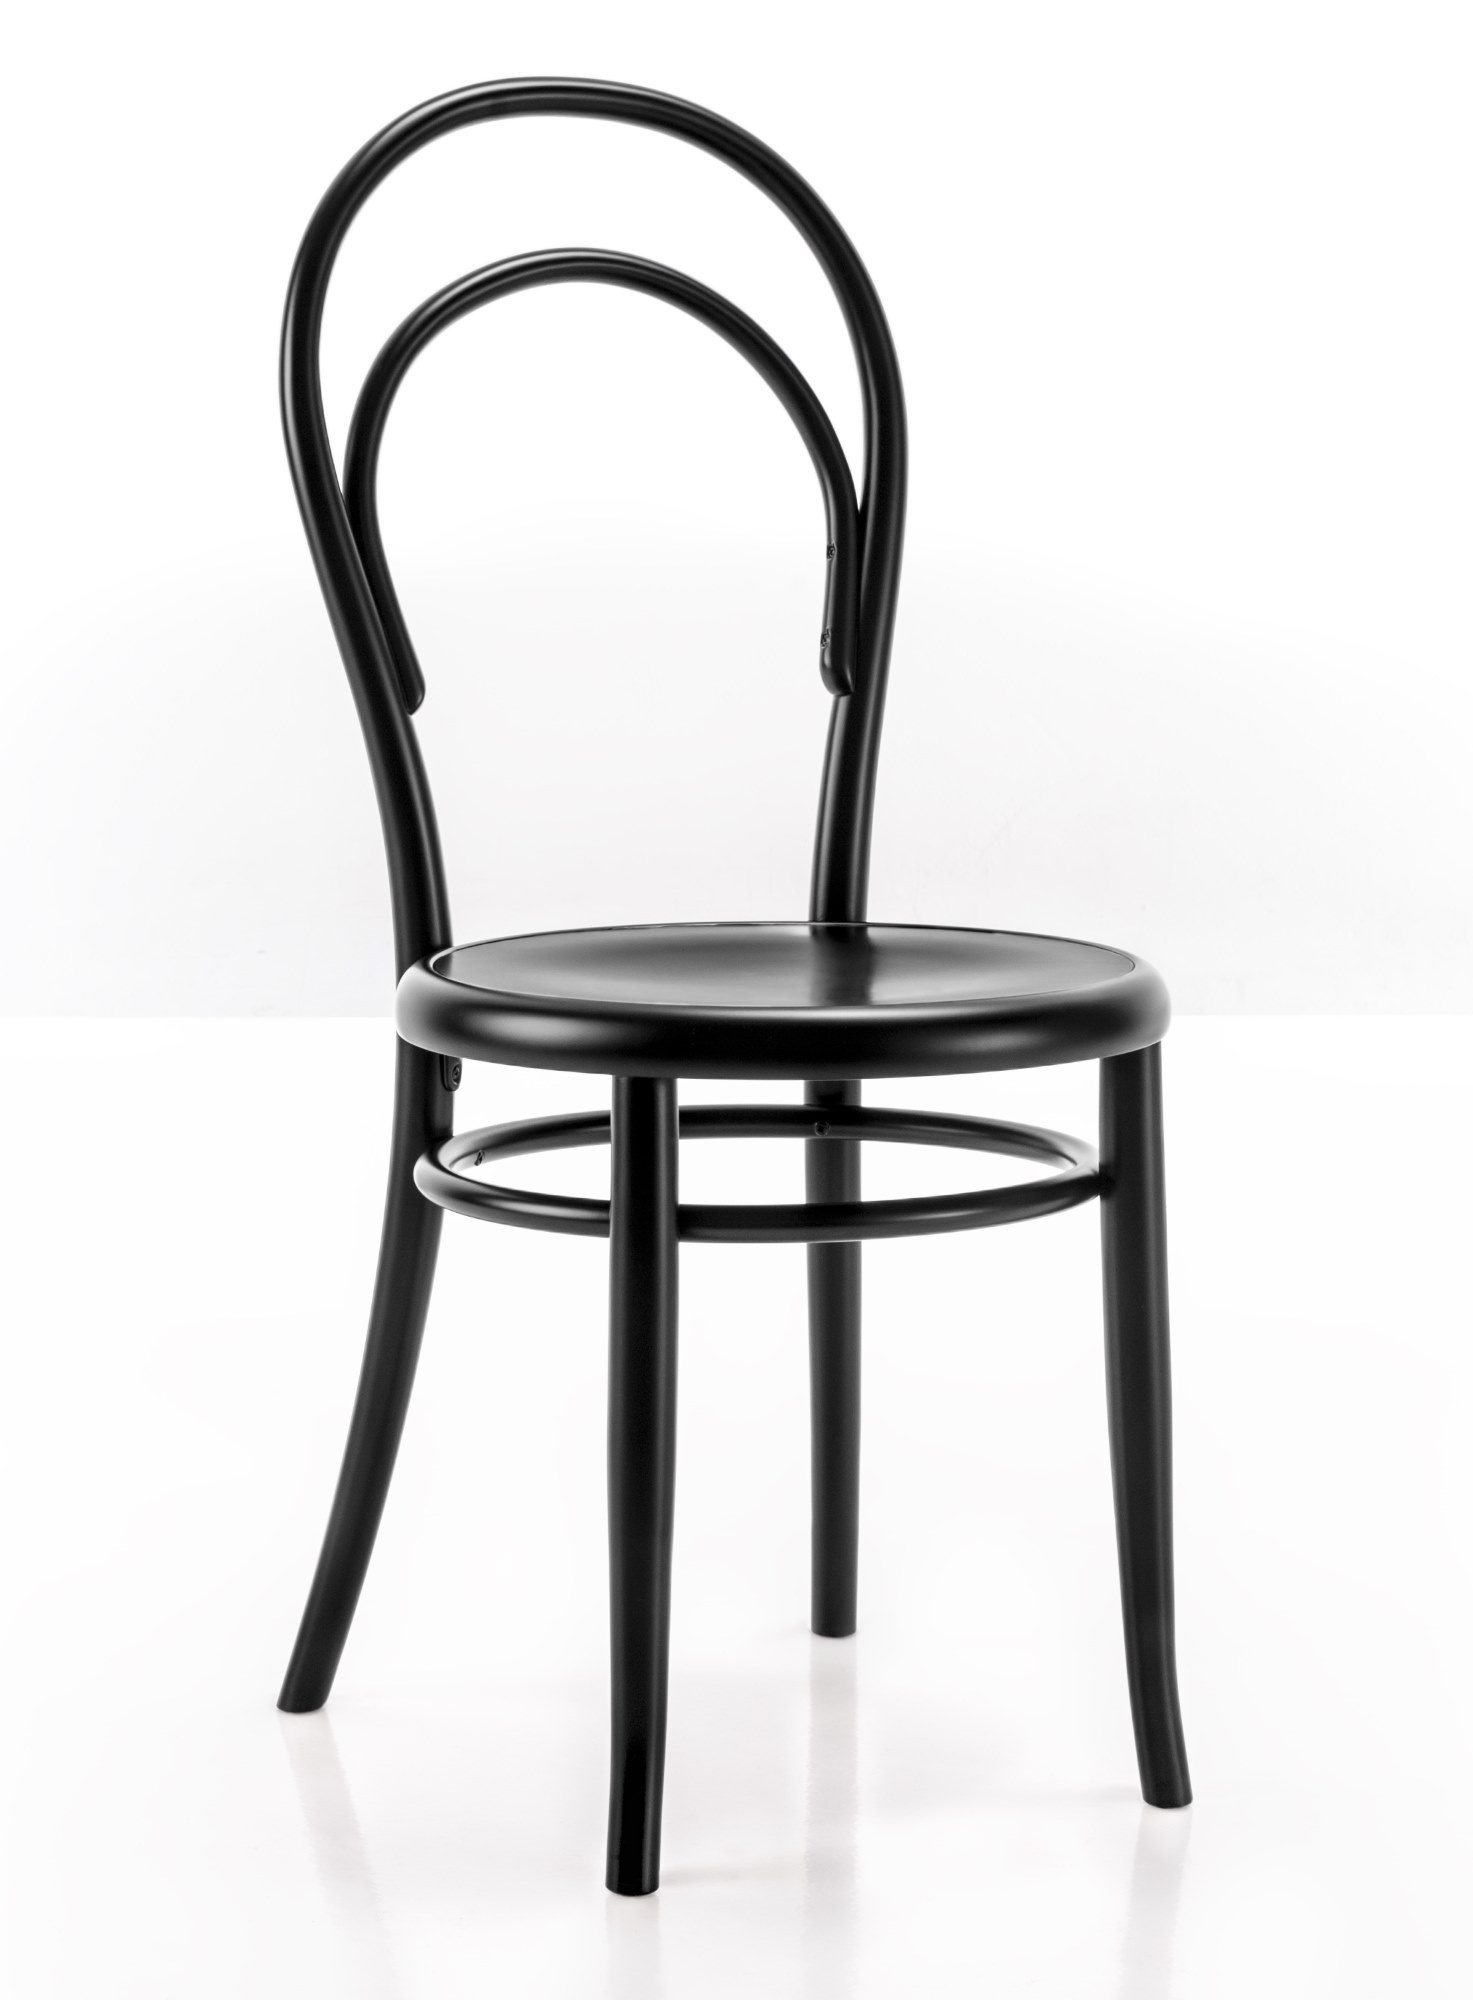 Stuhl Design
 N 14 Stuhl Wiener GTV Design einrichten design